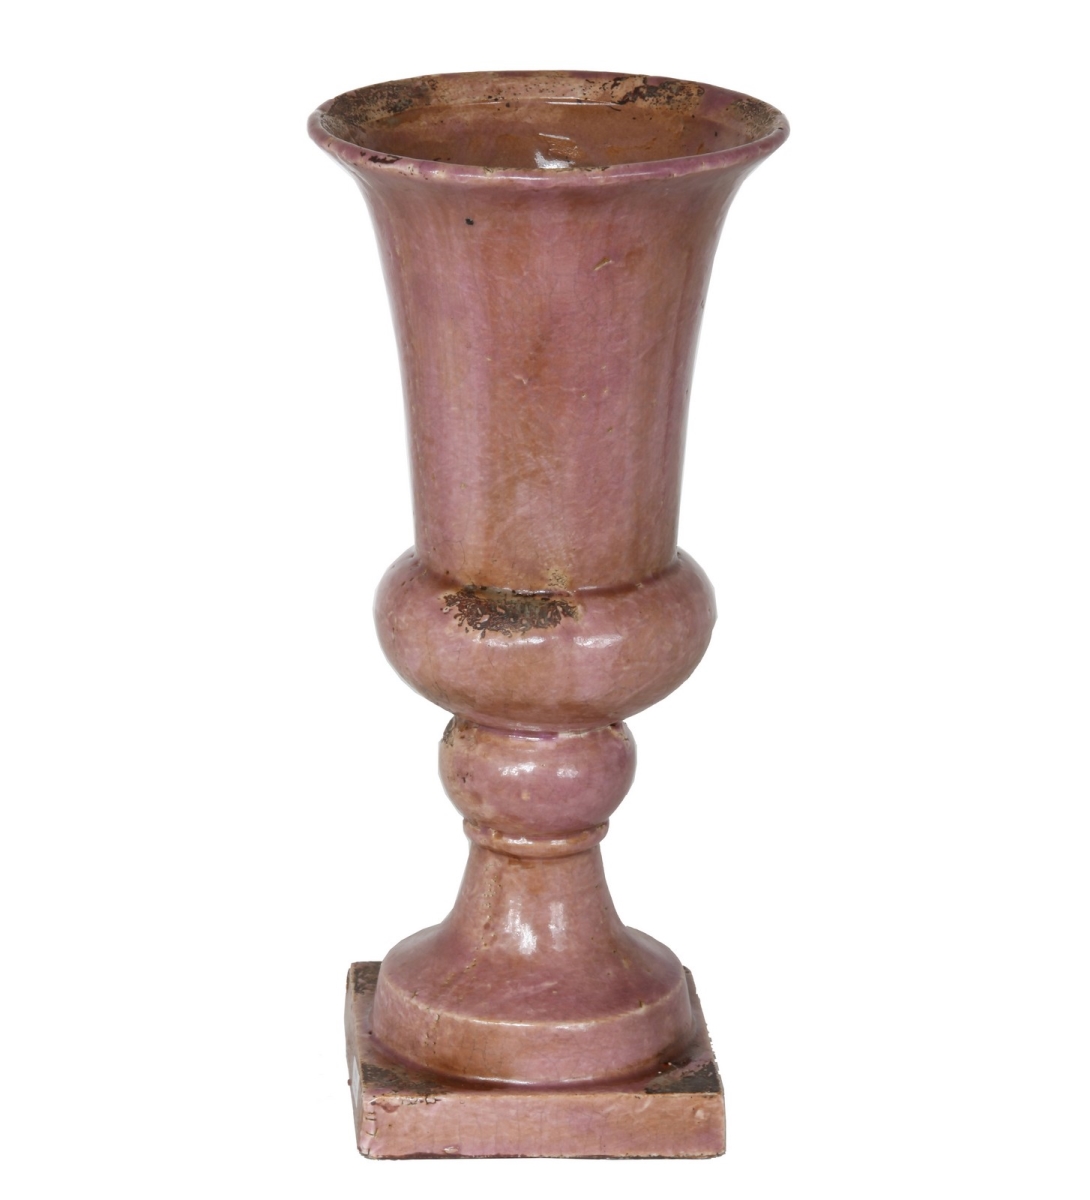 66504 Ceramic Vase - Small